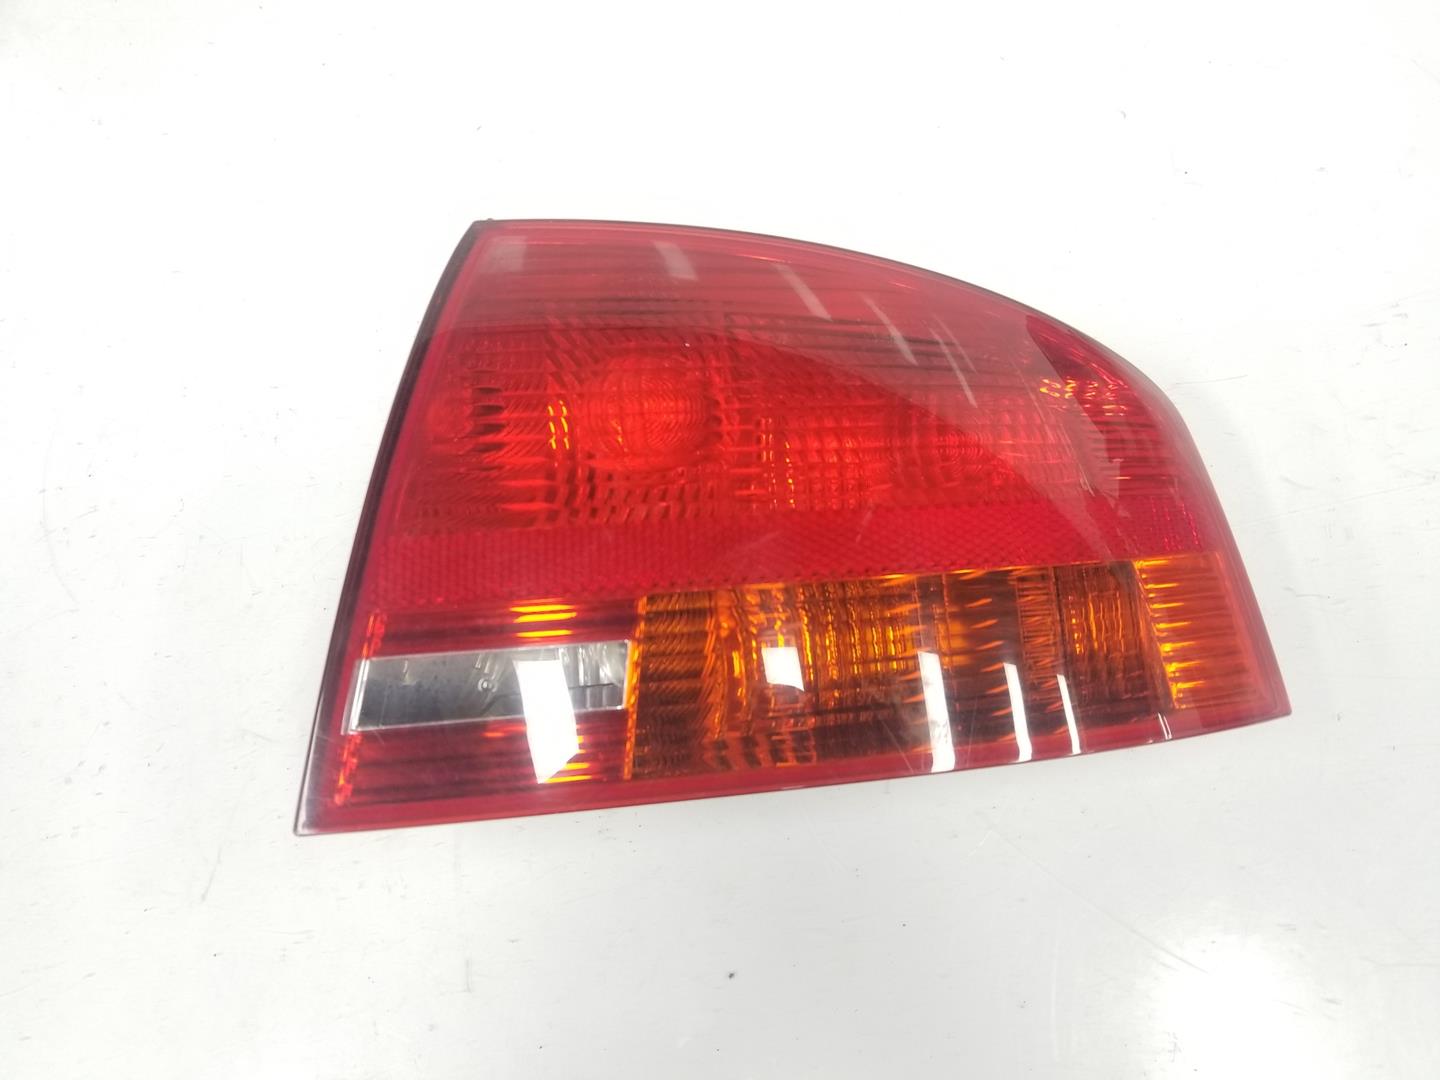 AUDI A4 B6/8E (2000-2005) Rear Right Taillight Lamp 8E5945096, 8E5945096 19927709